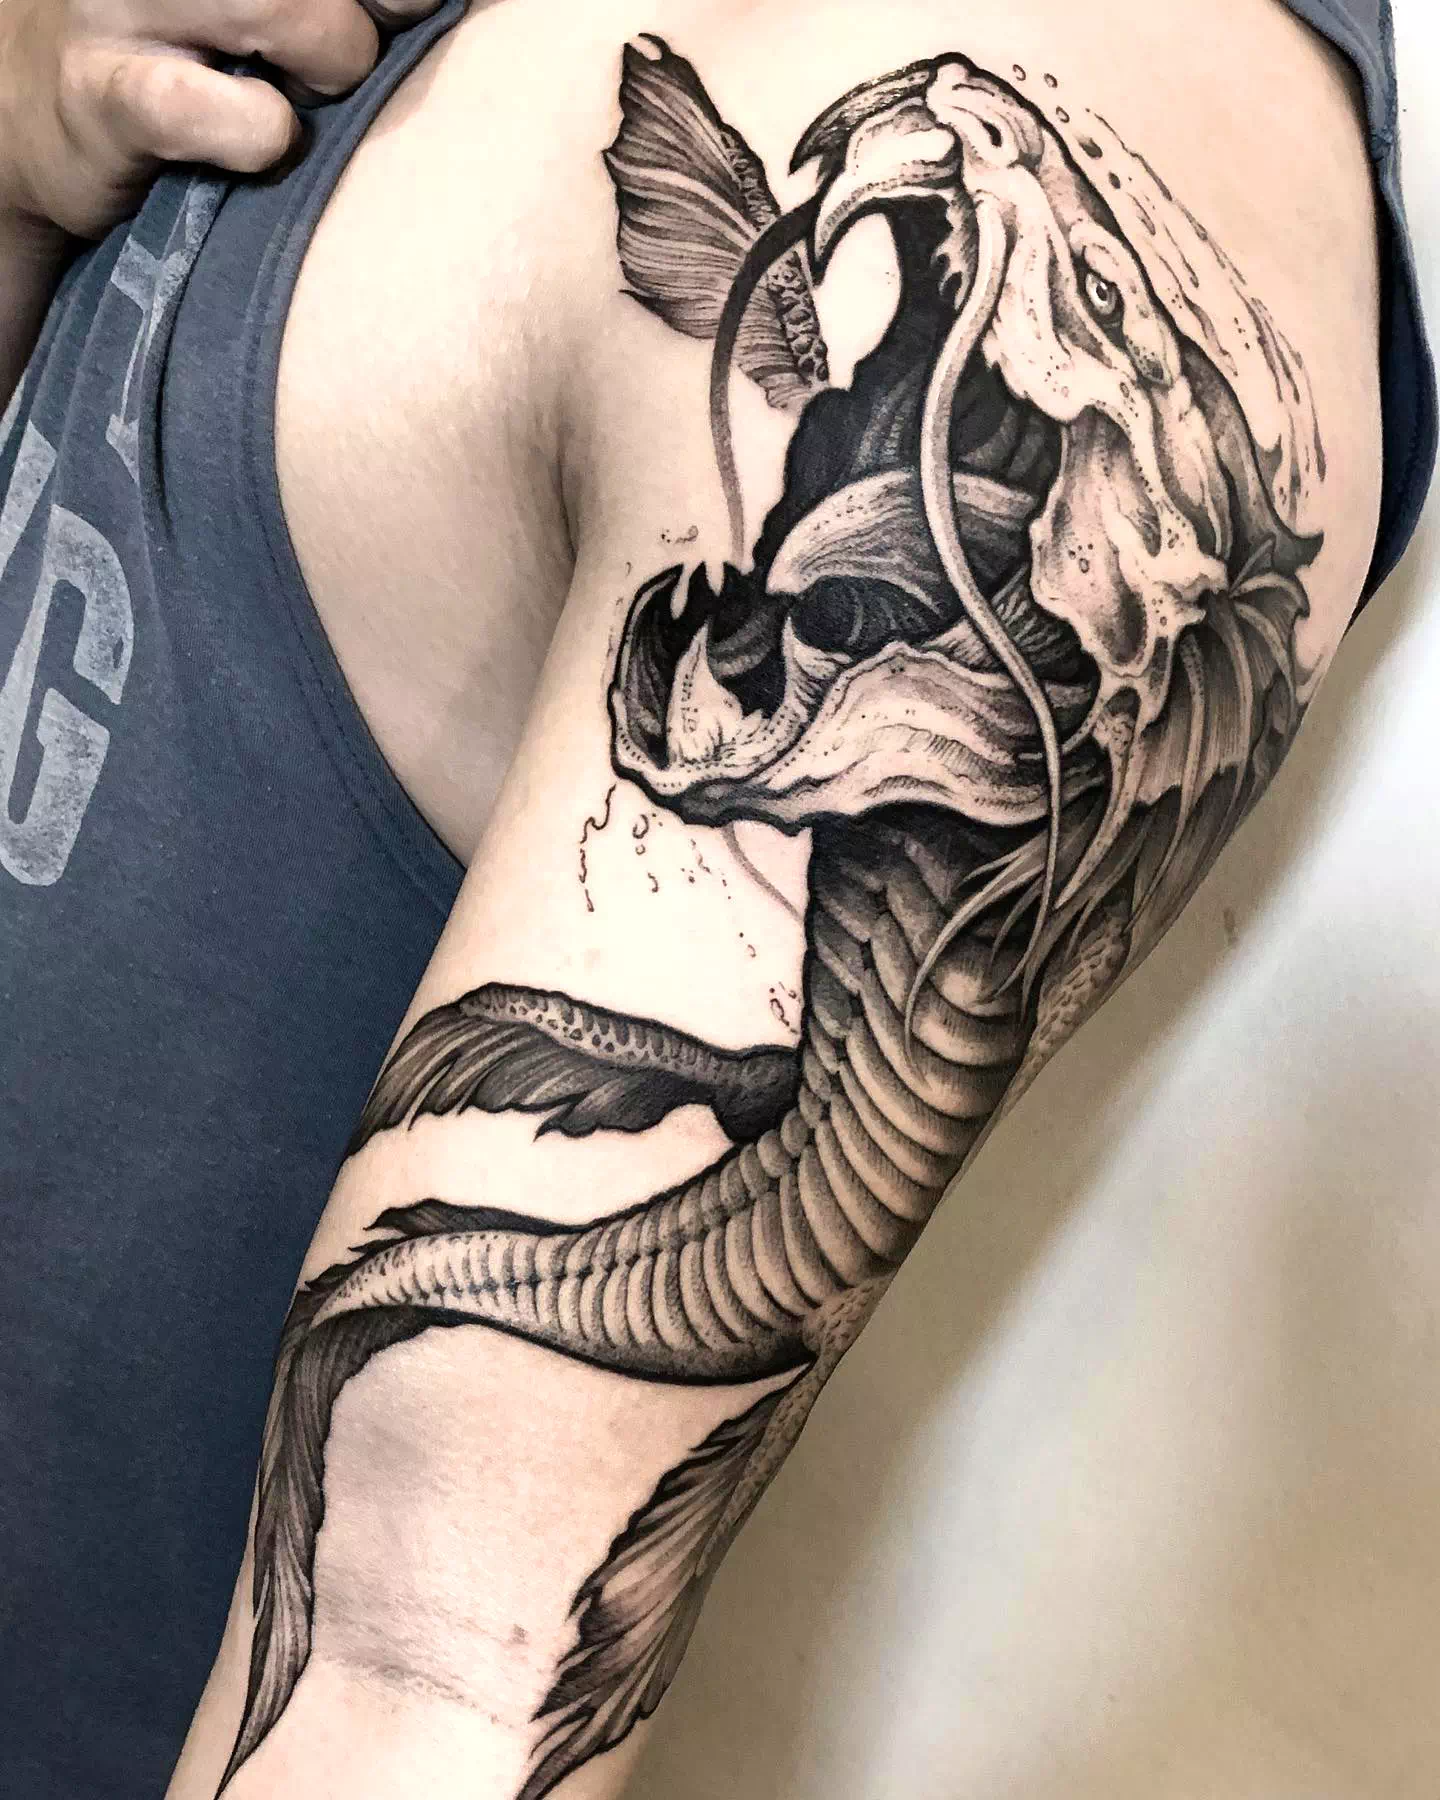 Best Dragon Koi Fish Tattoo Ideas 2